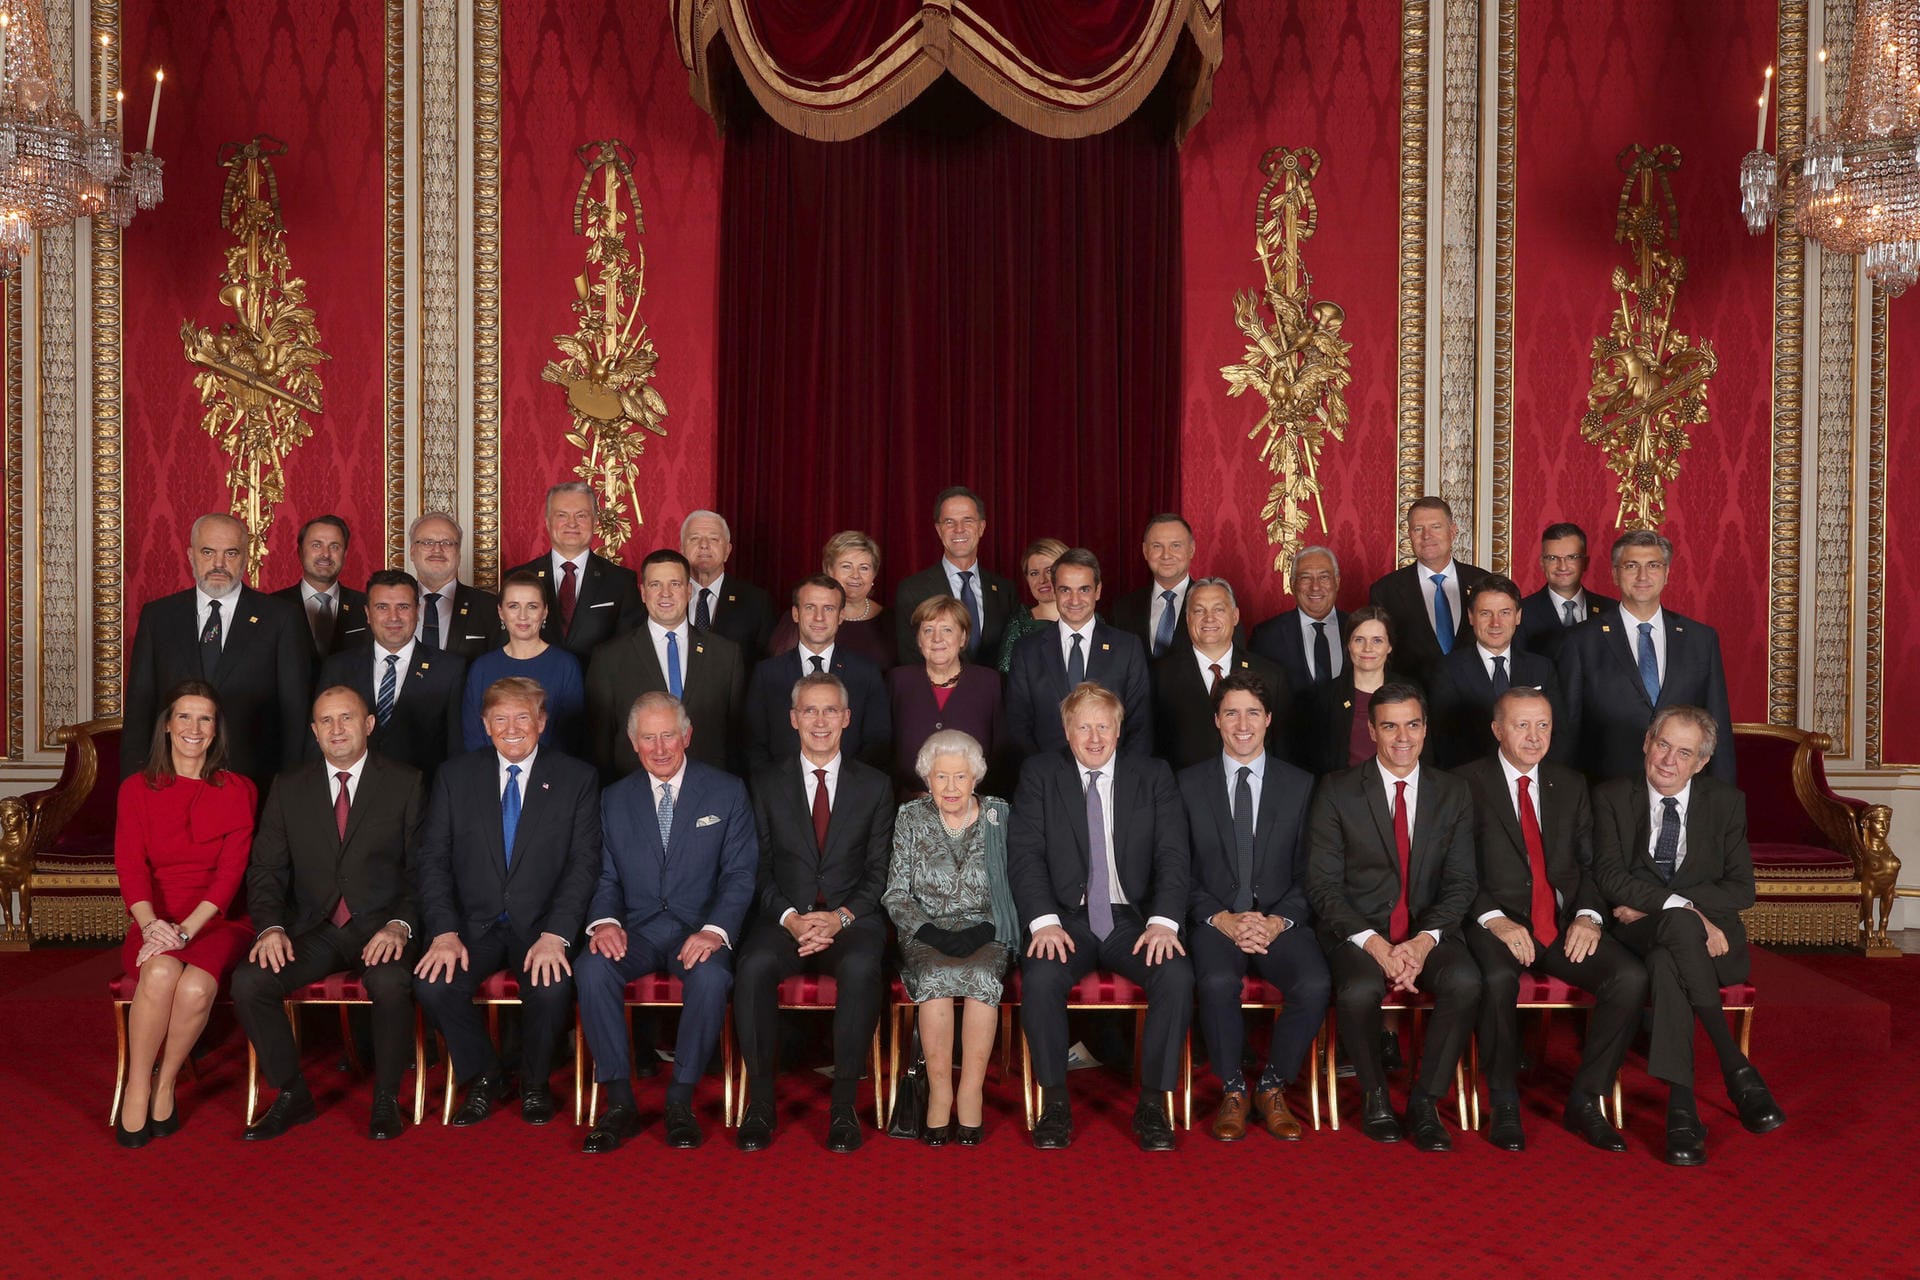 Die Staats- und Regierungschefs der Nato-Bündnisländer sitzen während eines Empfangs im Buckingham-Palast mit ihren Gastgebern für ein Gruppenfoto zusammen.